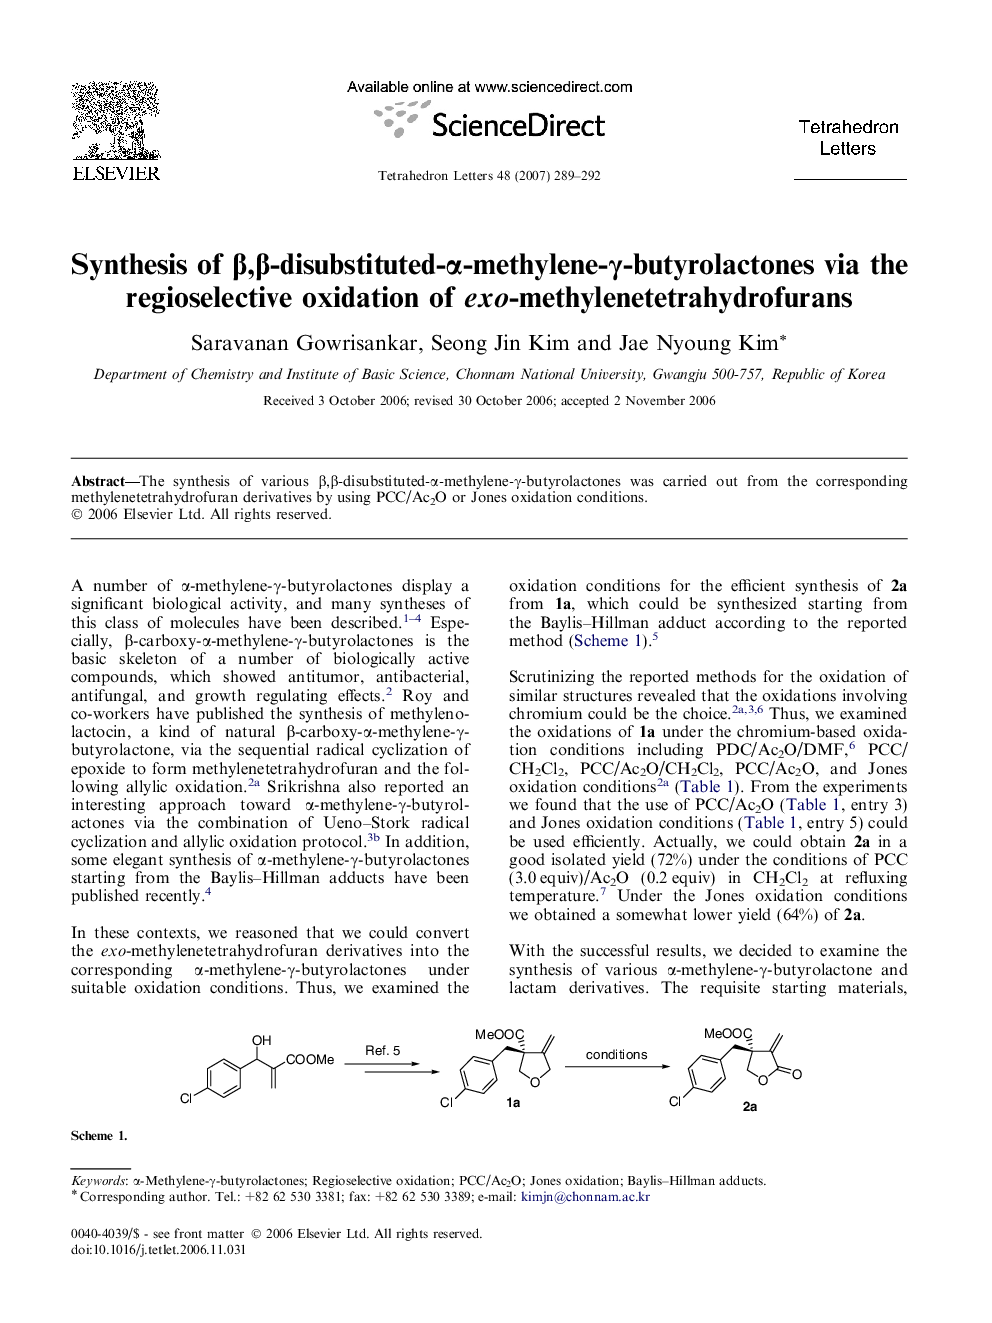 Synthesis of Î²,Î²-disubstituted-Î±-methylene-Î³-butyrolactones via the regioselective oxidation of exo-methylenetetrahydrofurans